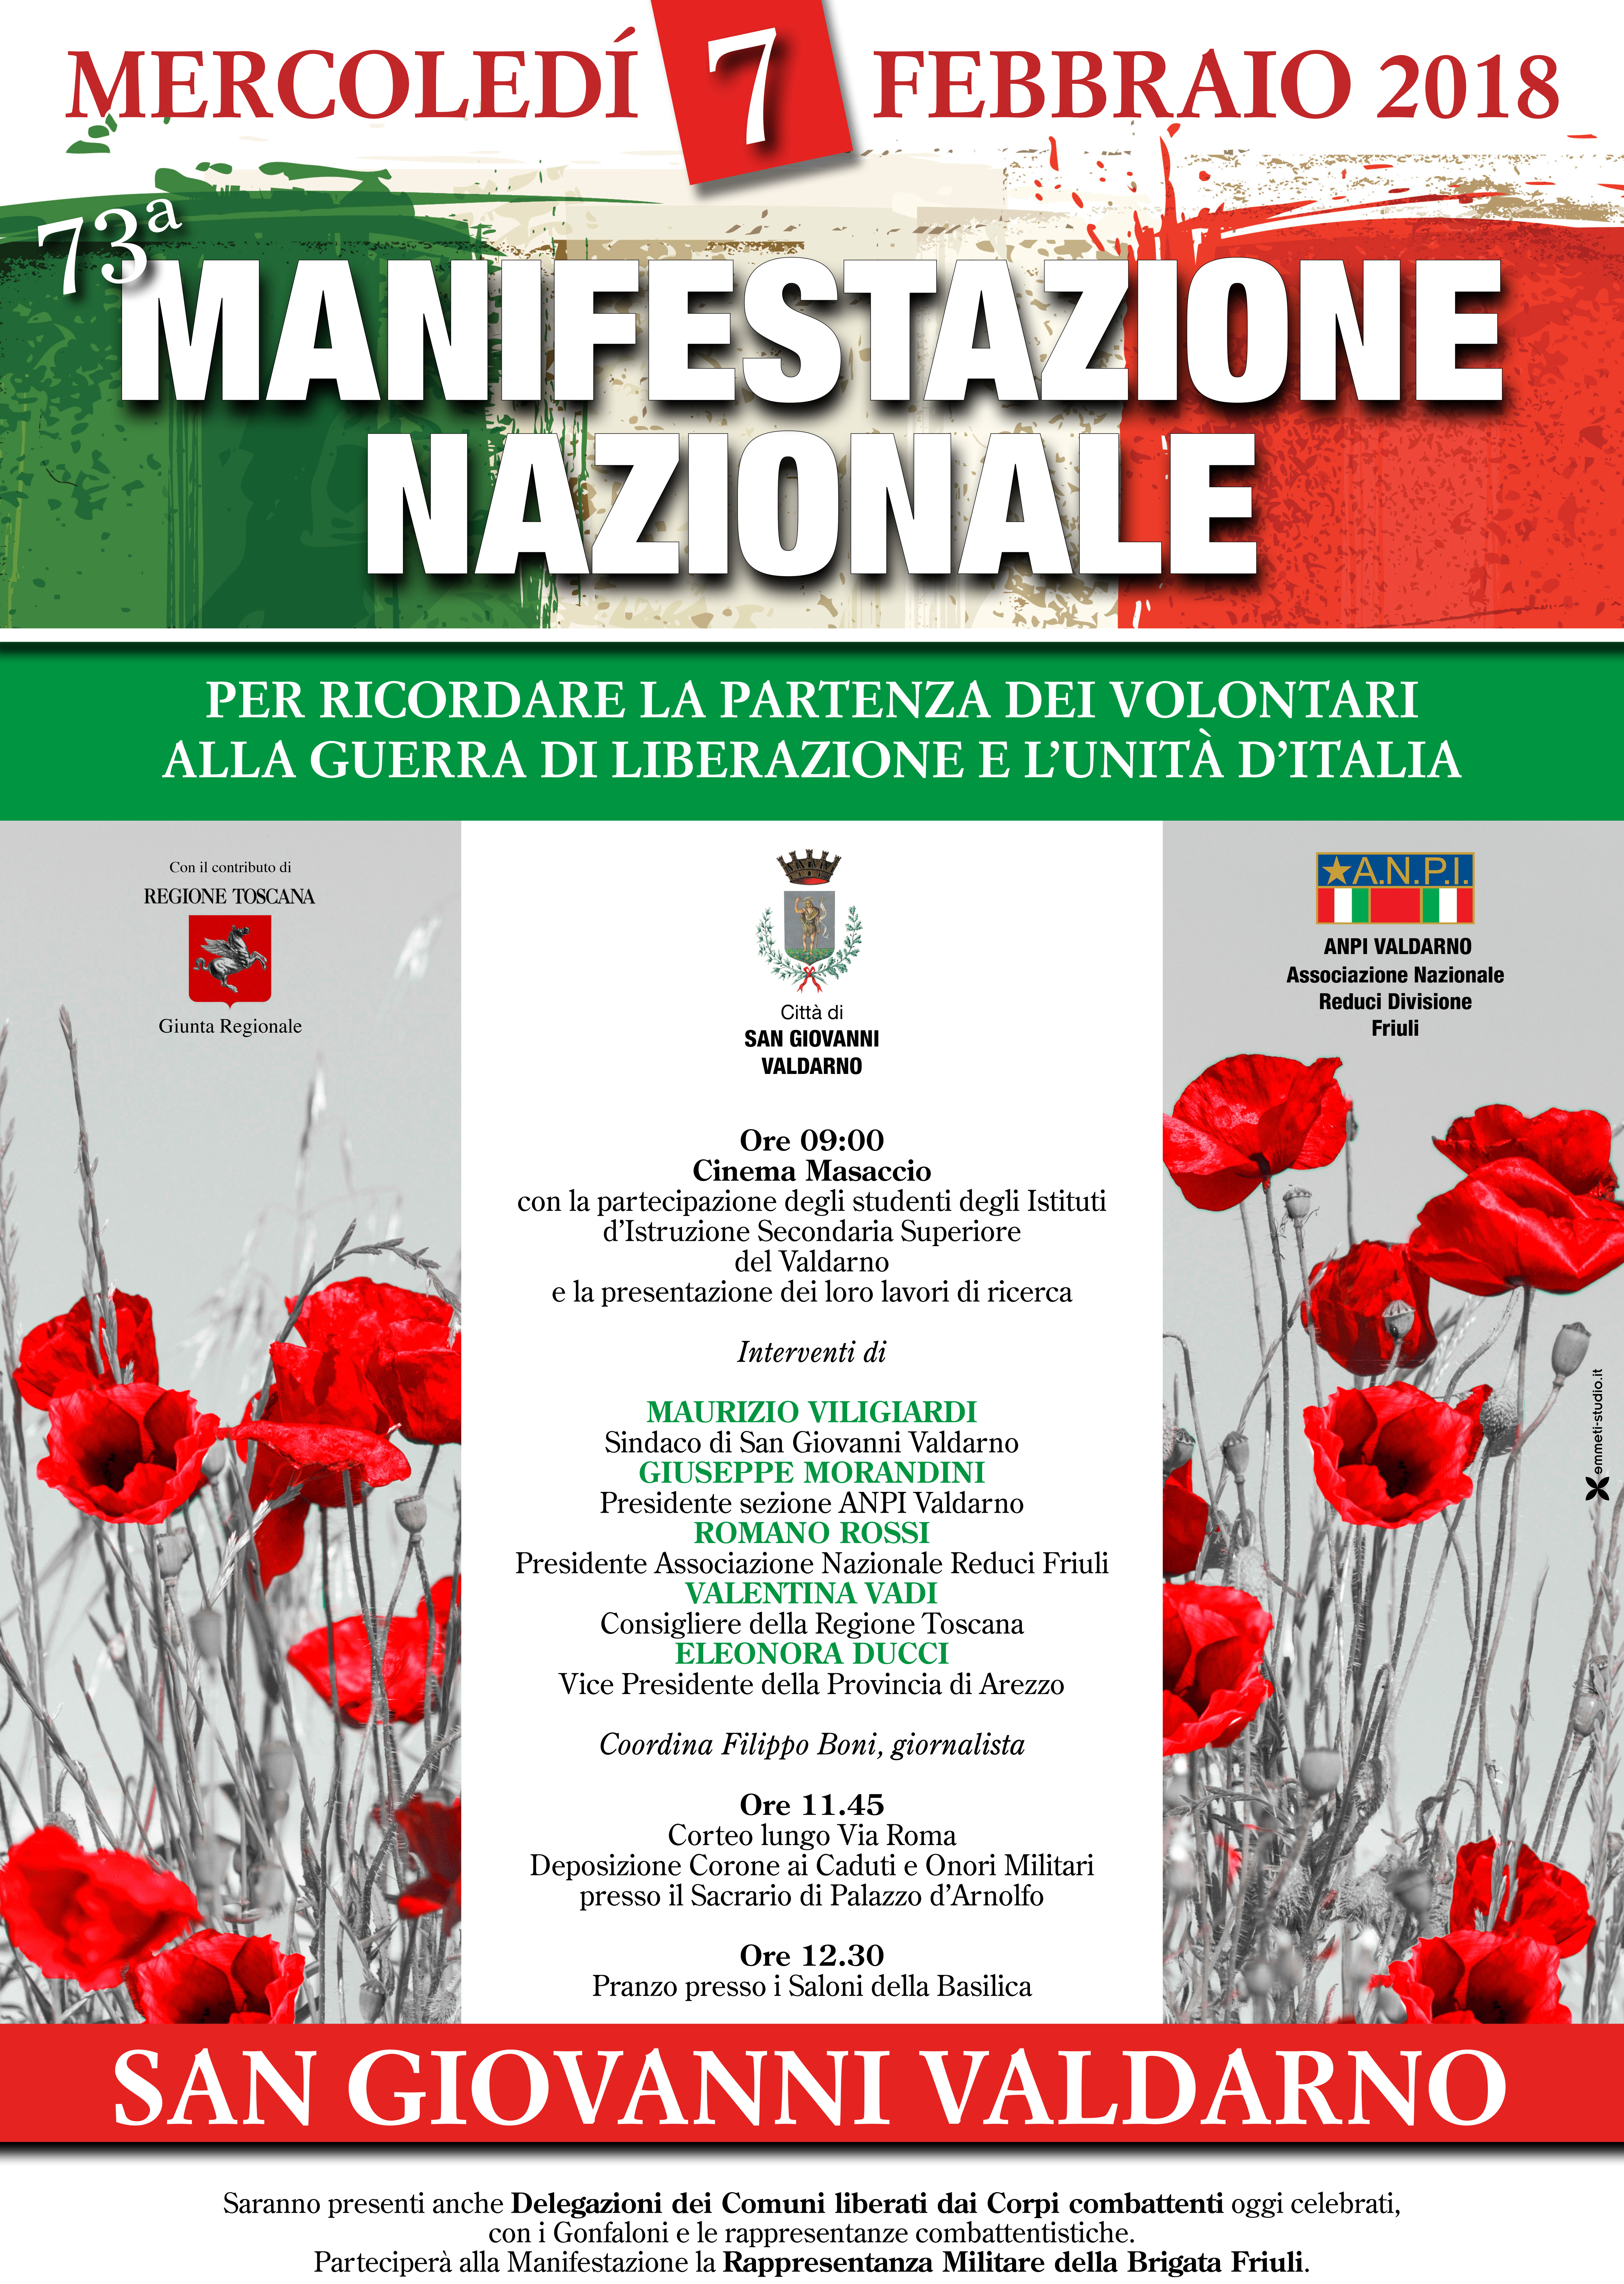 73^ manifestazione nazionale per ricordare la partenza dei volontari alla Guerra di Liberazione e l’Unità d’Italia